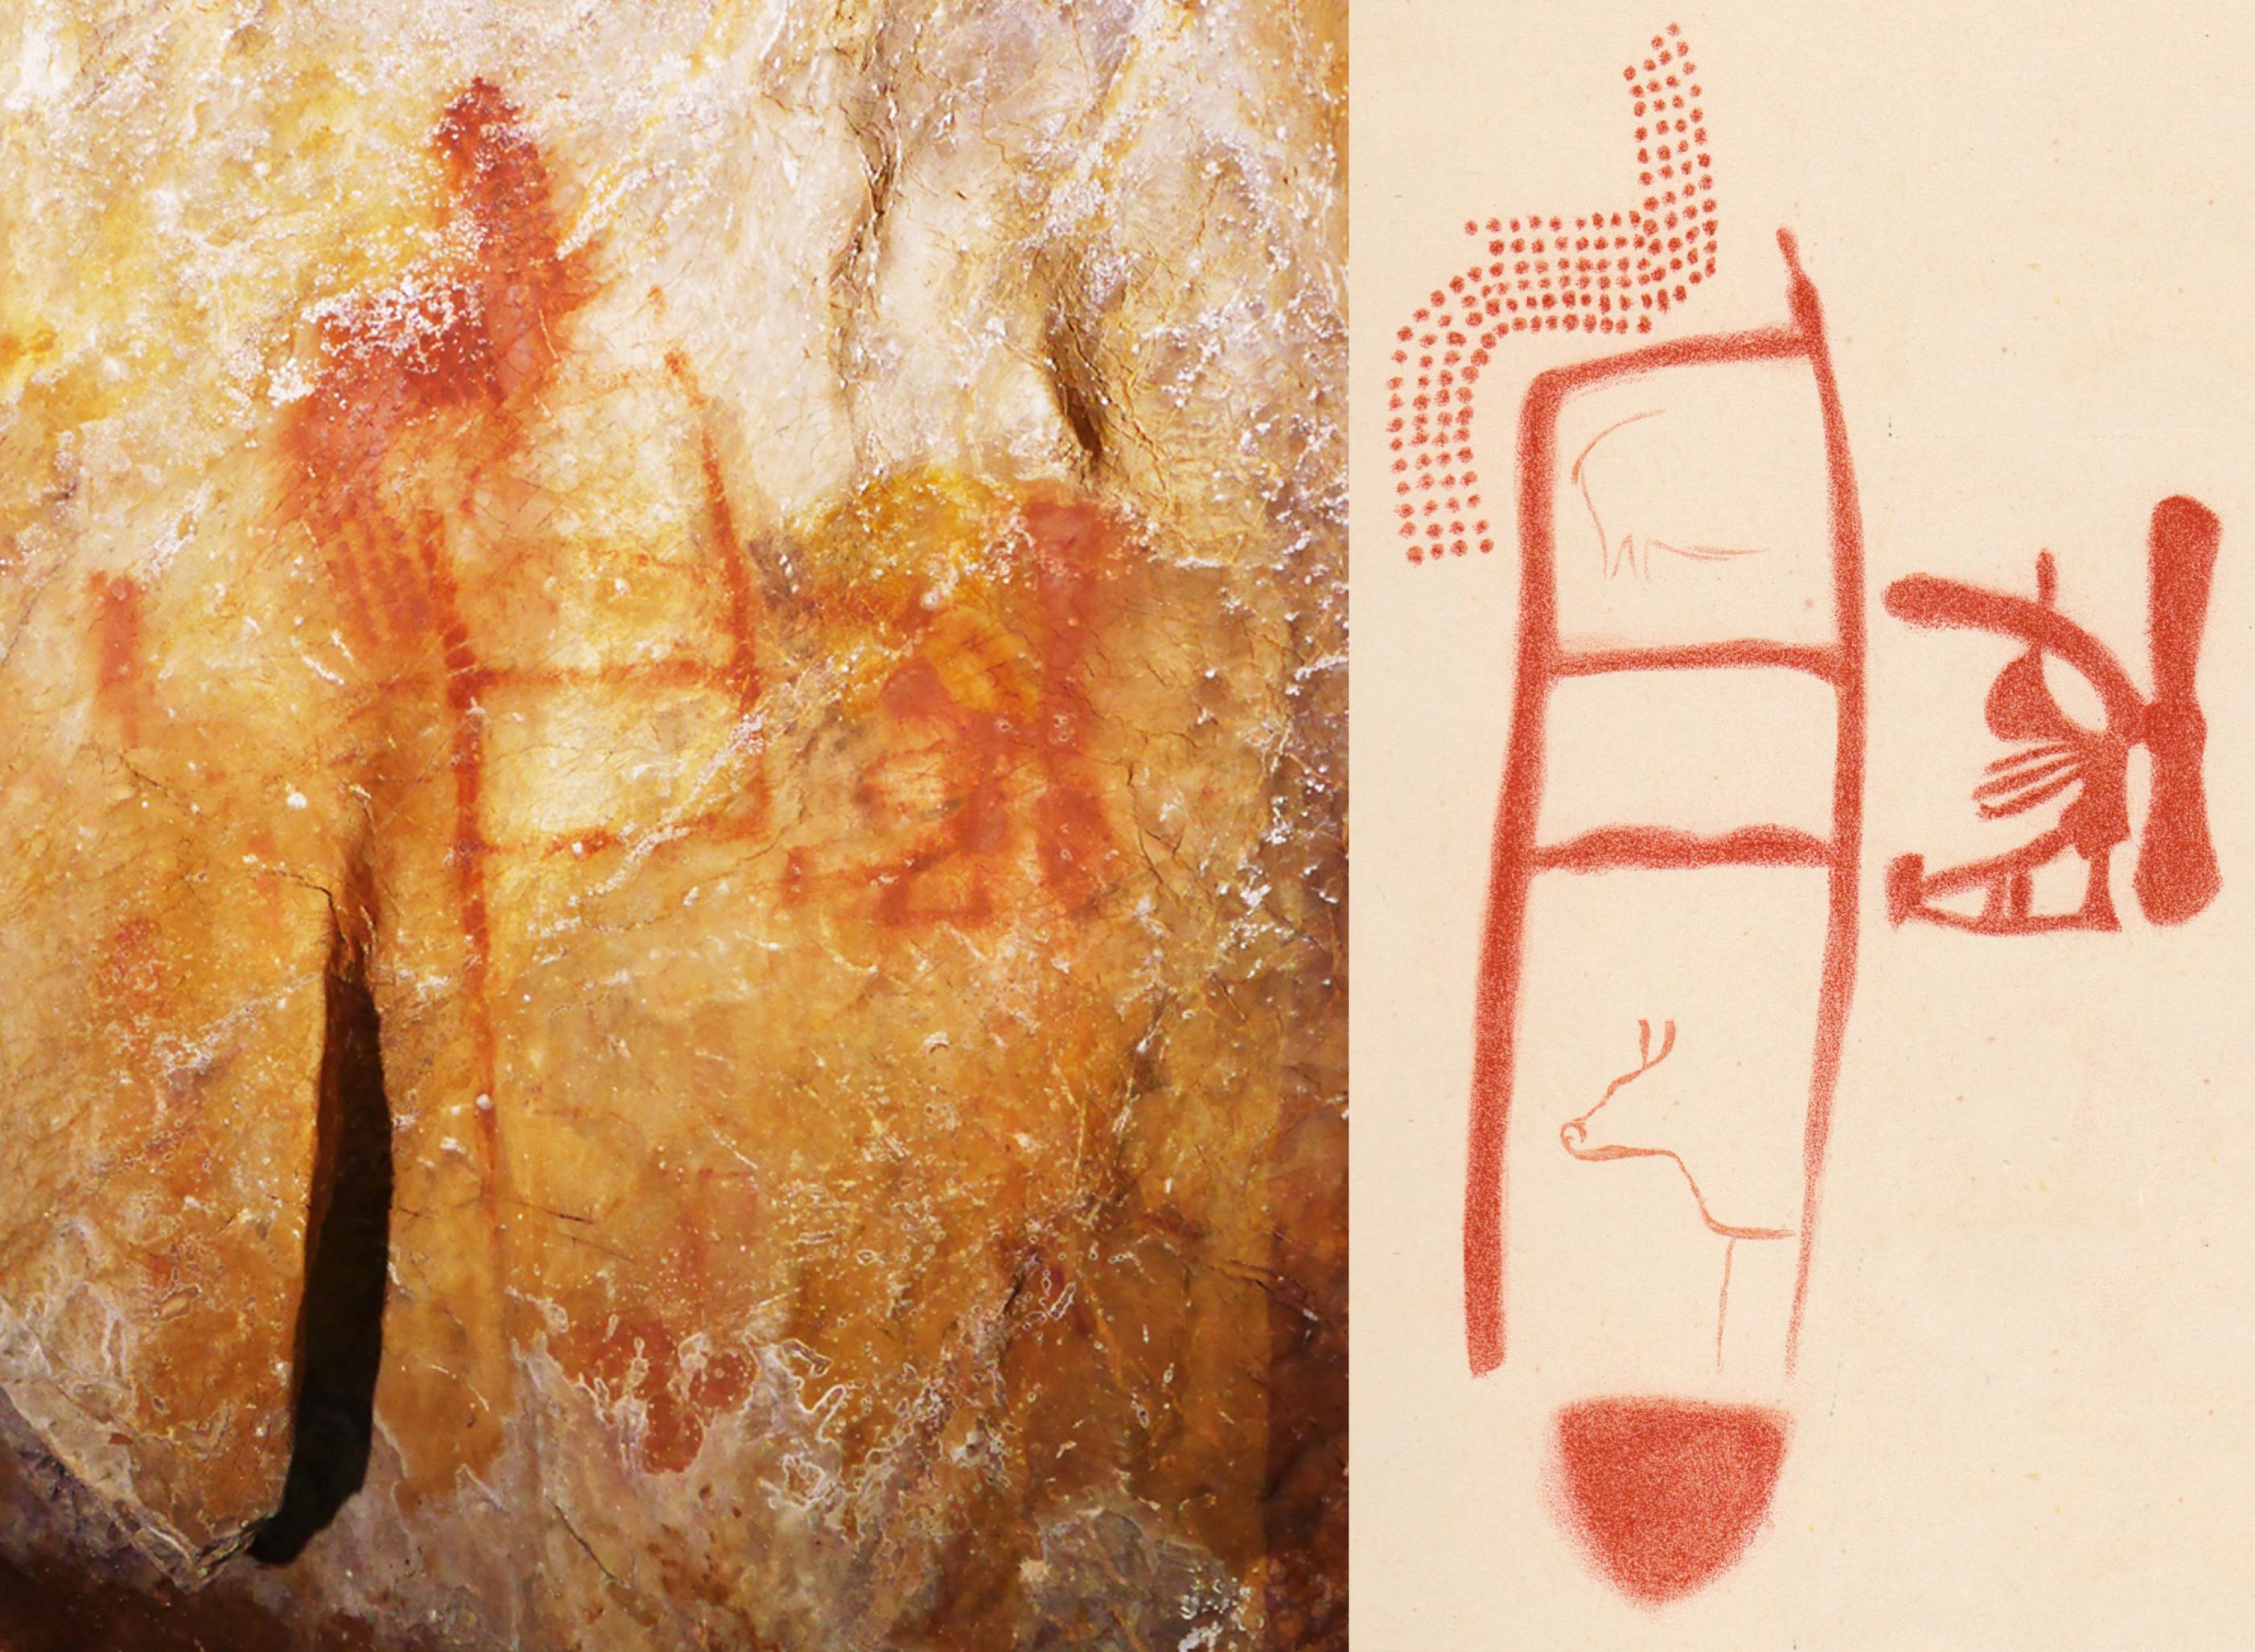 Links ist die gelbliche Felswand einer Höhle zu sehen, auf der in roter Farbe aufgemalte Muster, Figuren und ein leiterartiges Gebilde zu erkennen sind. Das rechte Bild zeigt eine Zeichnung, welche die roten Objekte – insbesondere die Leiter – auf beigem Untergrund deutlicher hervorhebt.